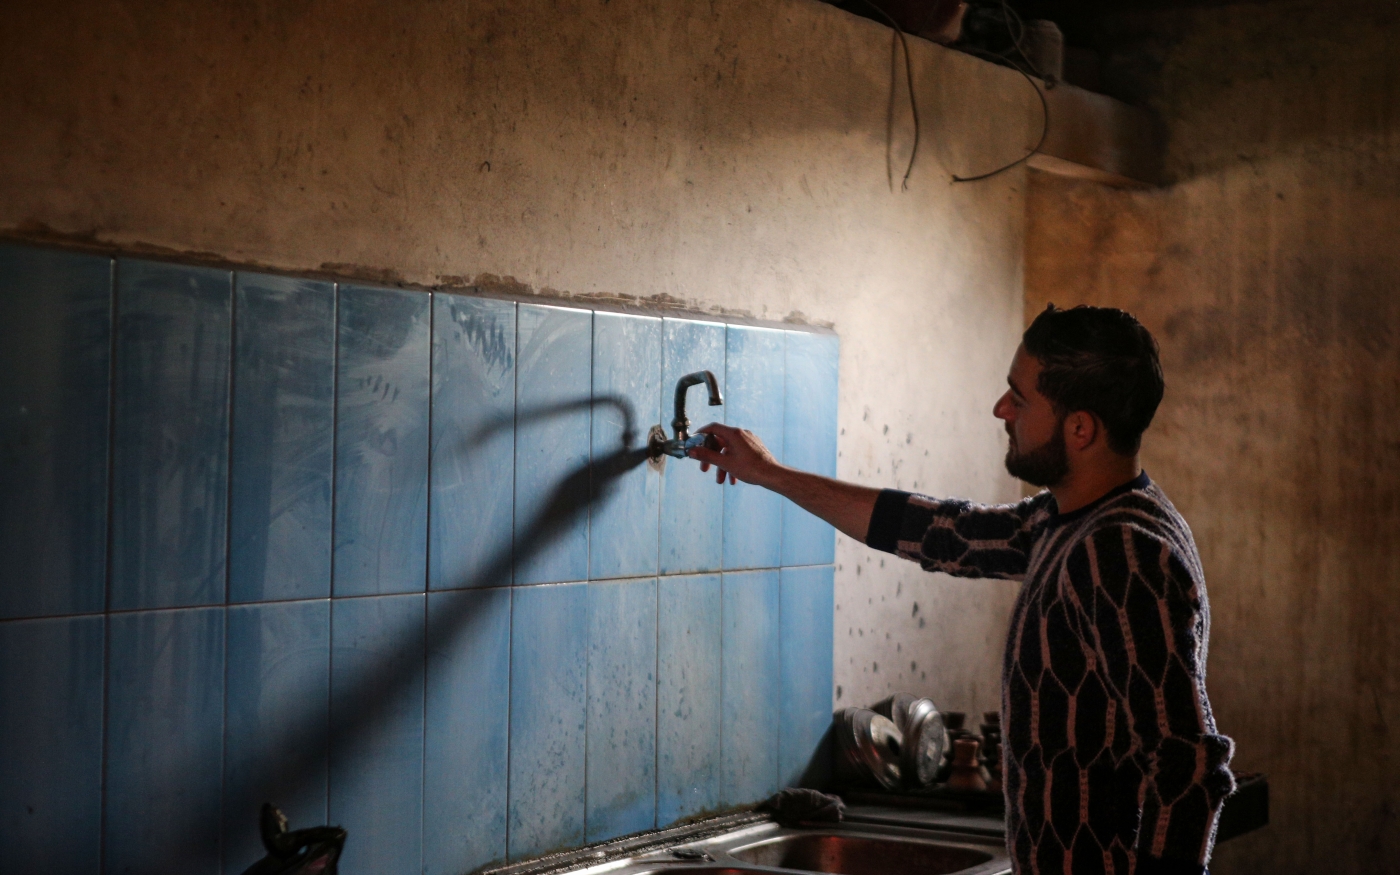 Un Palestinien vérifie le robinet d’eau de sa maison dans le camp de réfugiés d’al-Nuseirat à Gaza, où l’eau est constamment coupée, le 5 mars 2019 (MEE/Mohammed al-Hajjar)